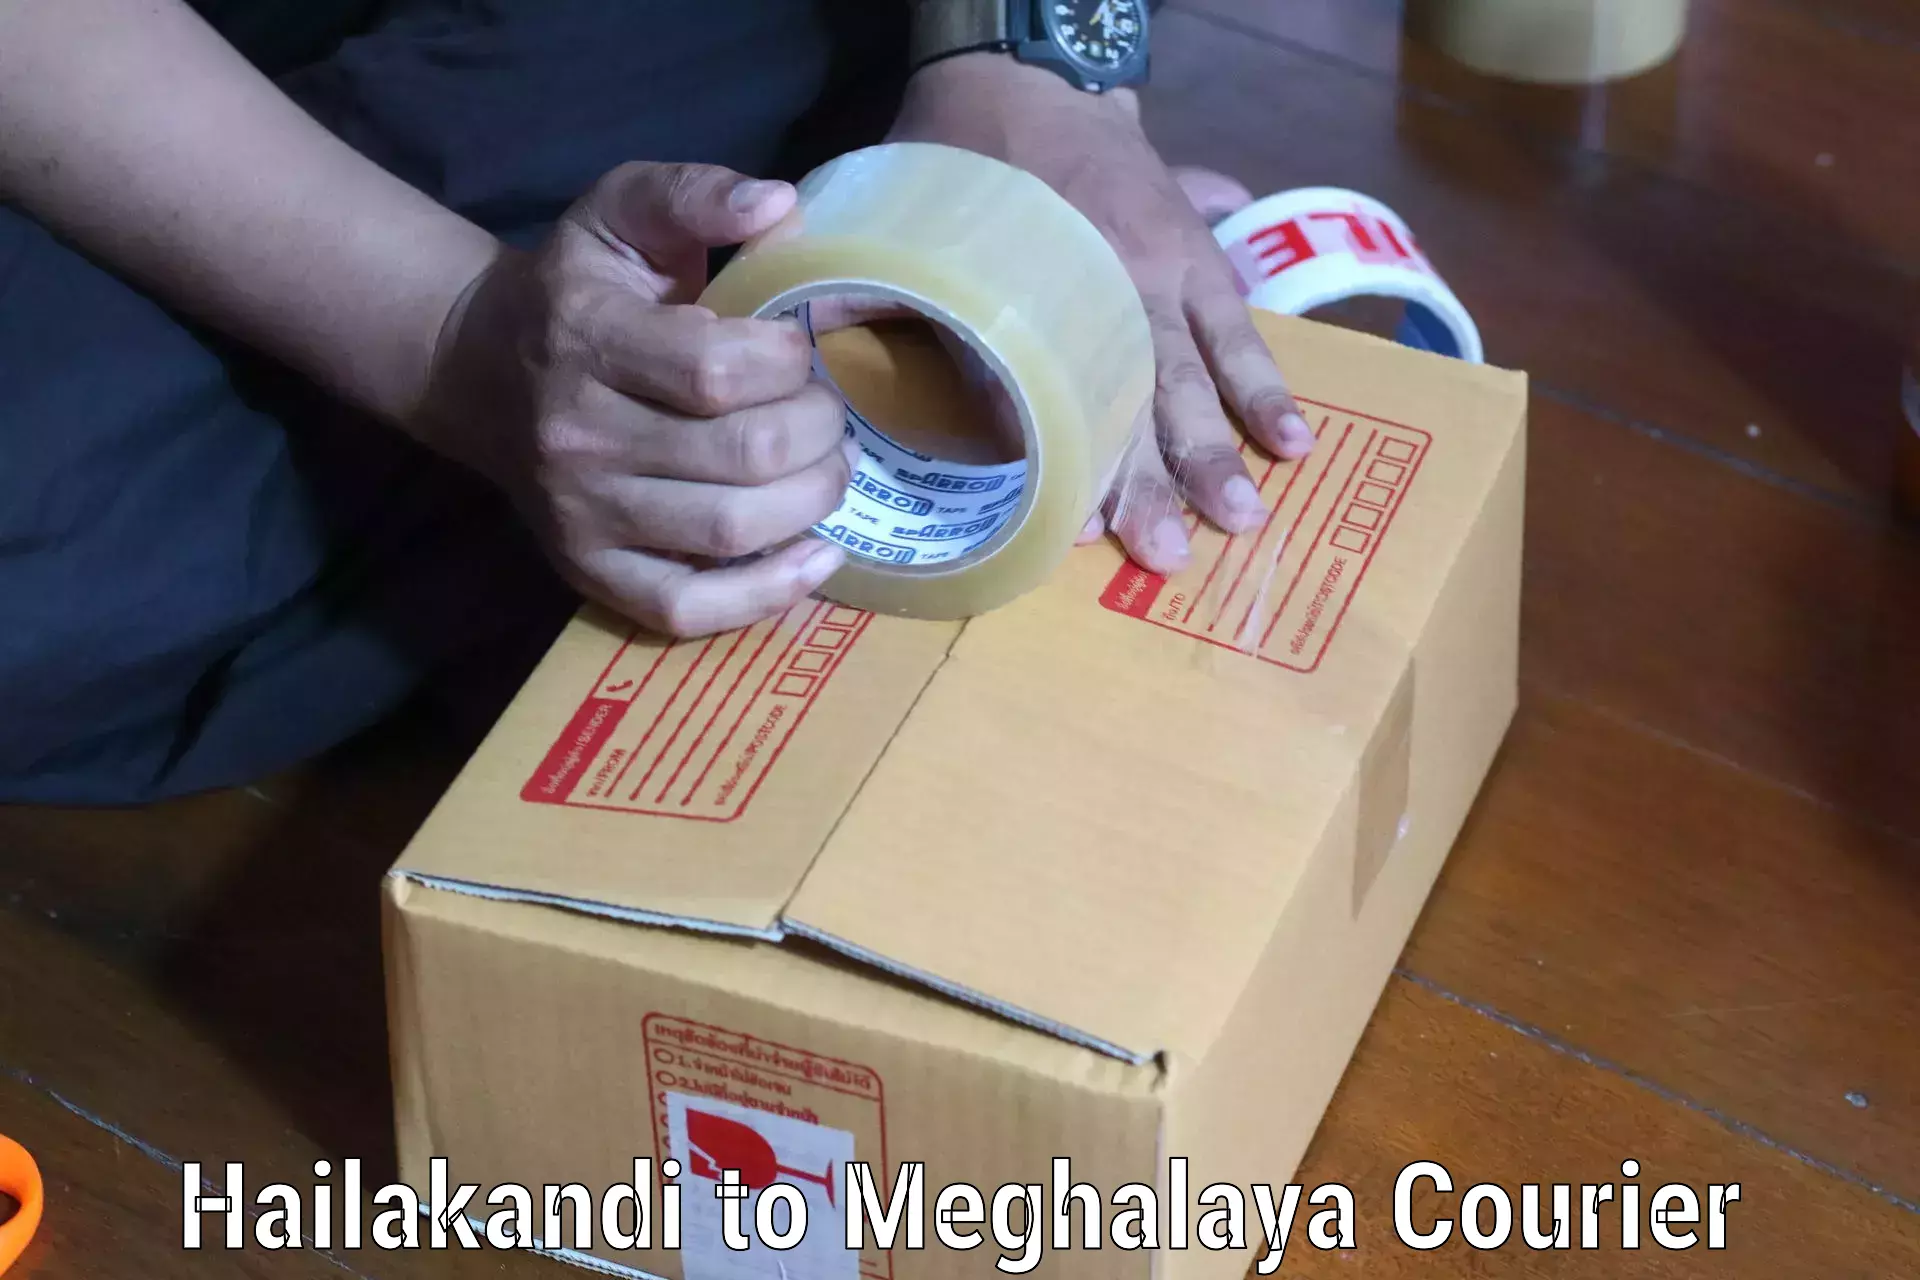 Expedited shipping methods Hailakandi to Ri Bhoi